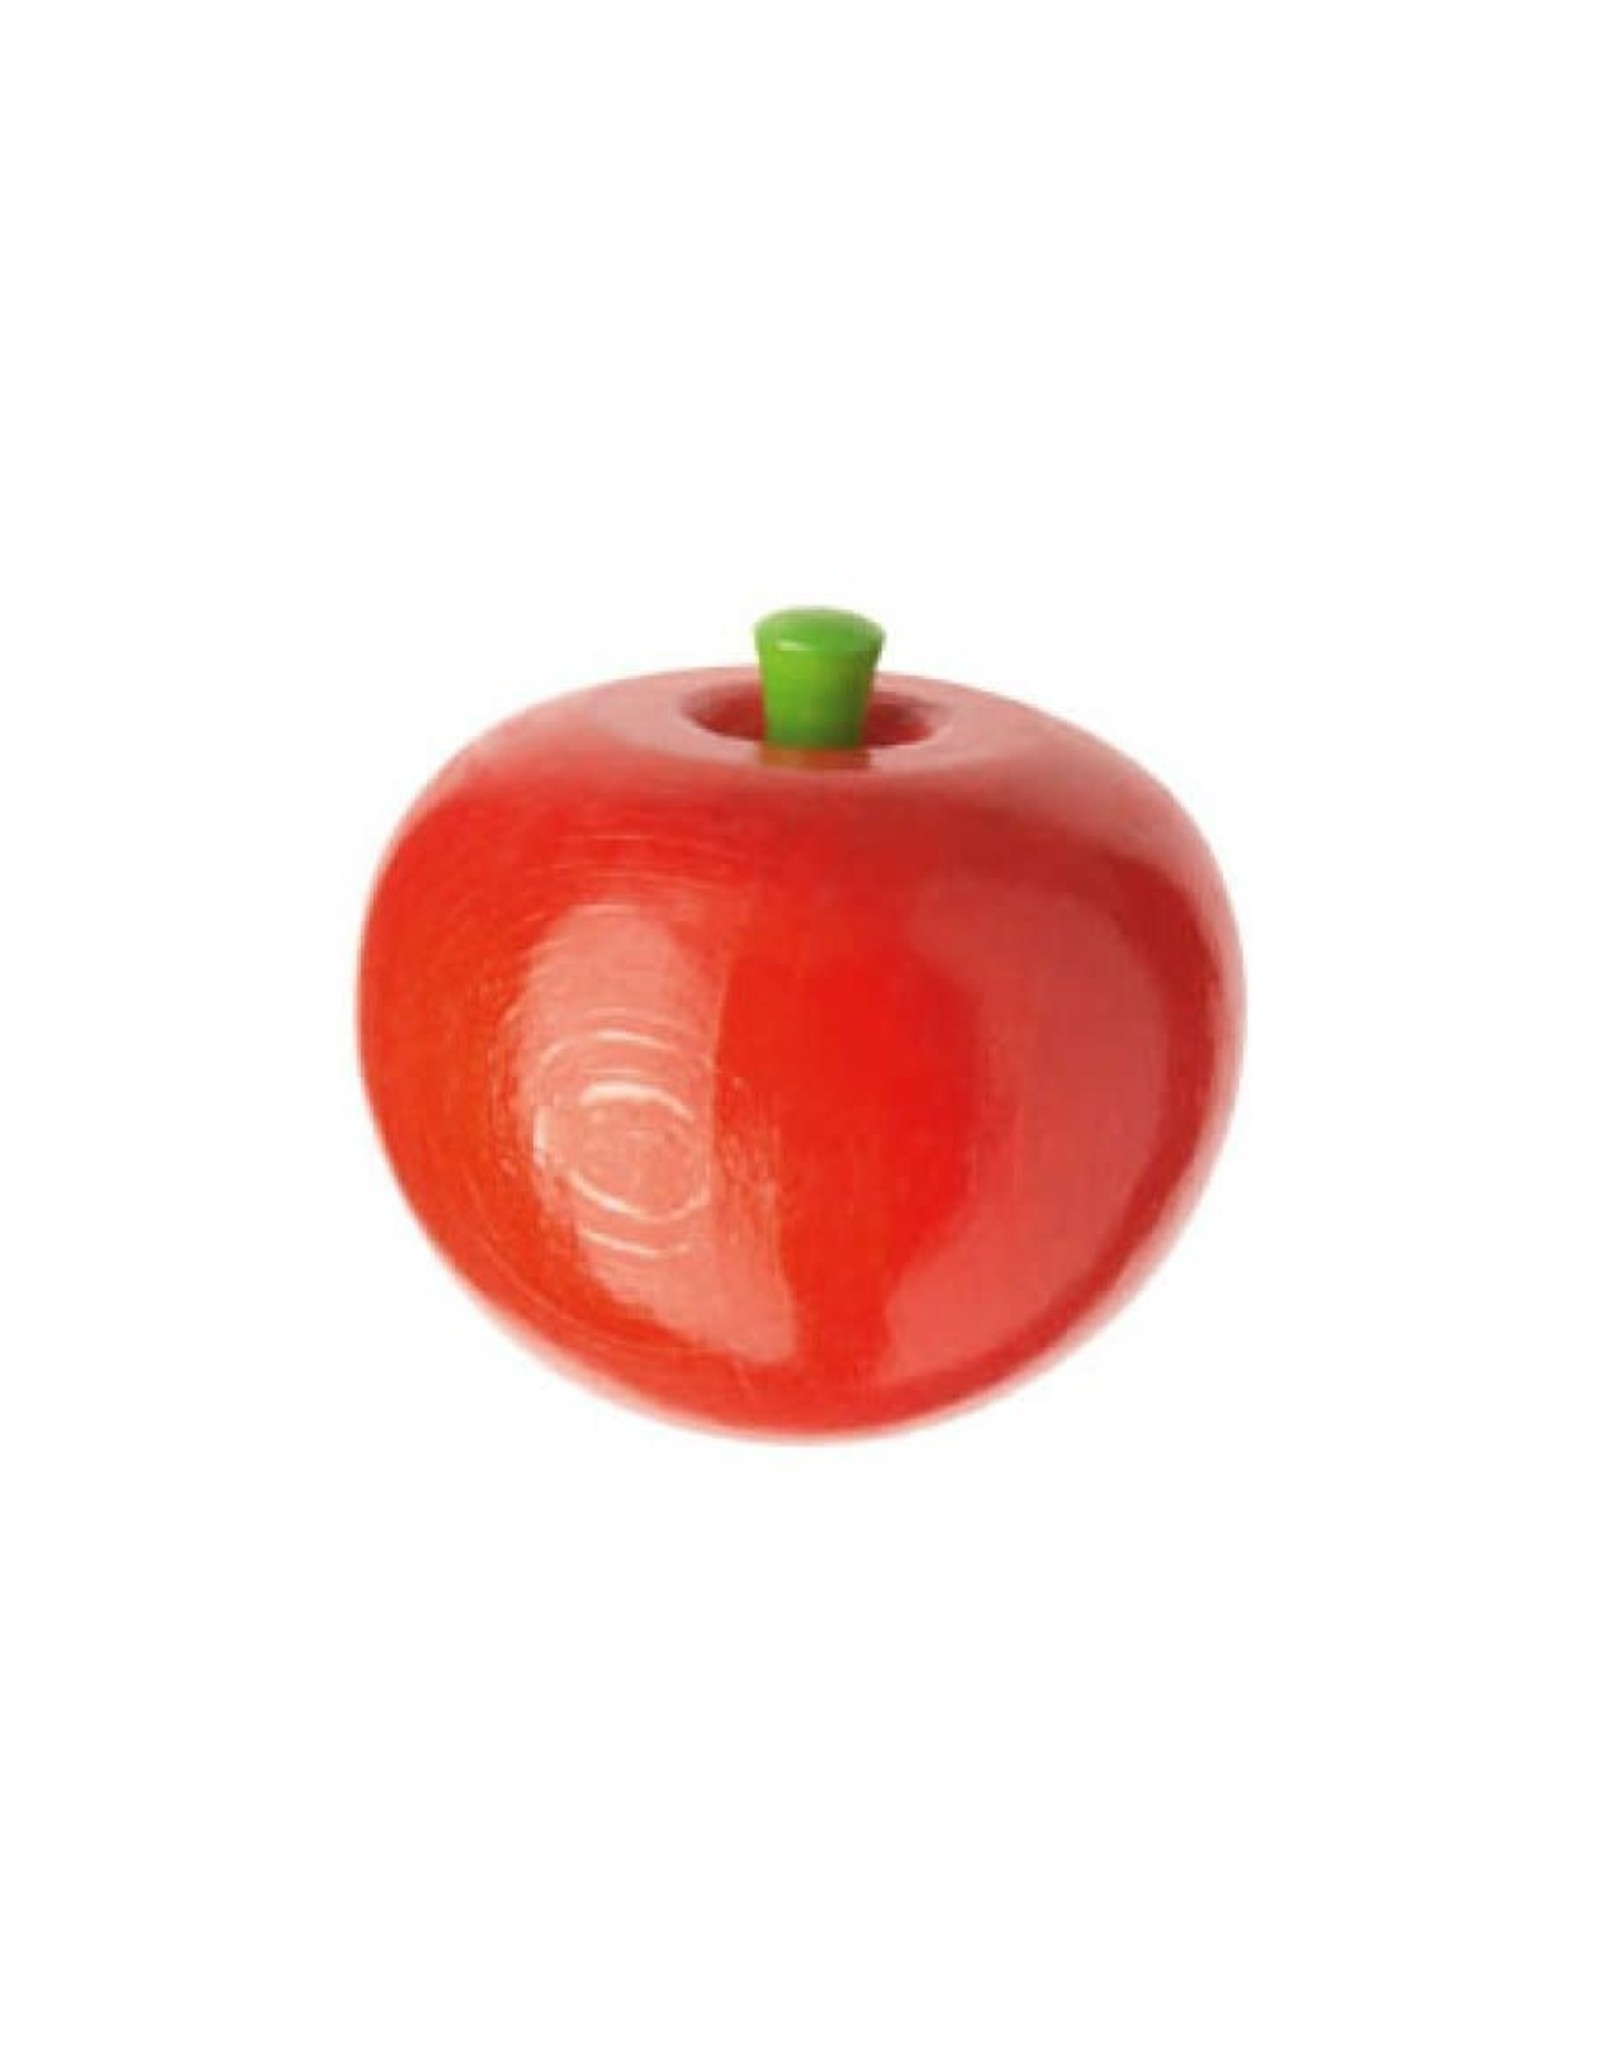 HABA Tomato Wooden Fruit